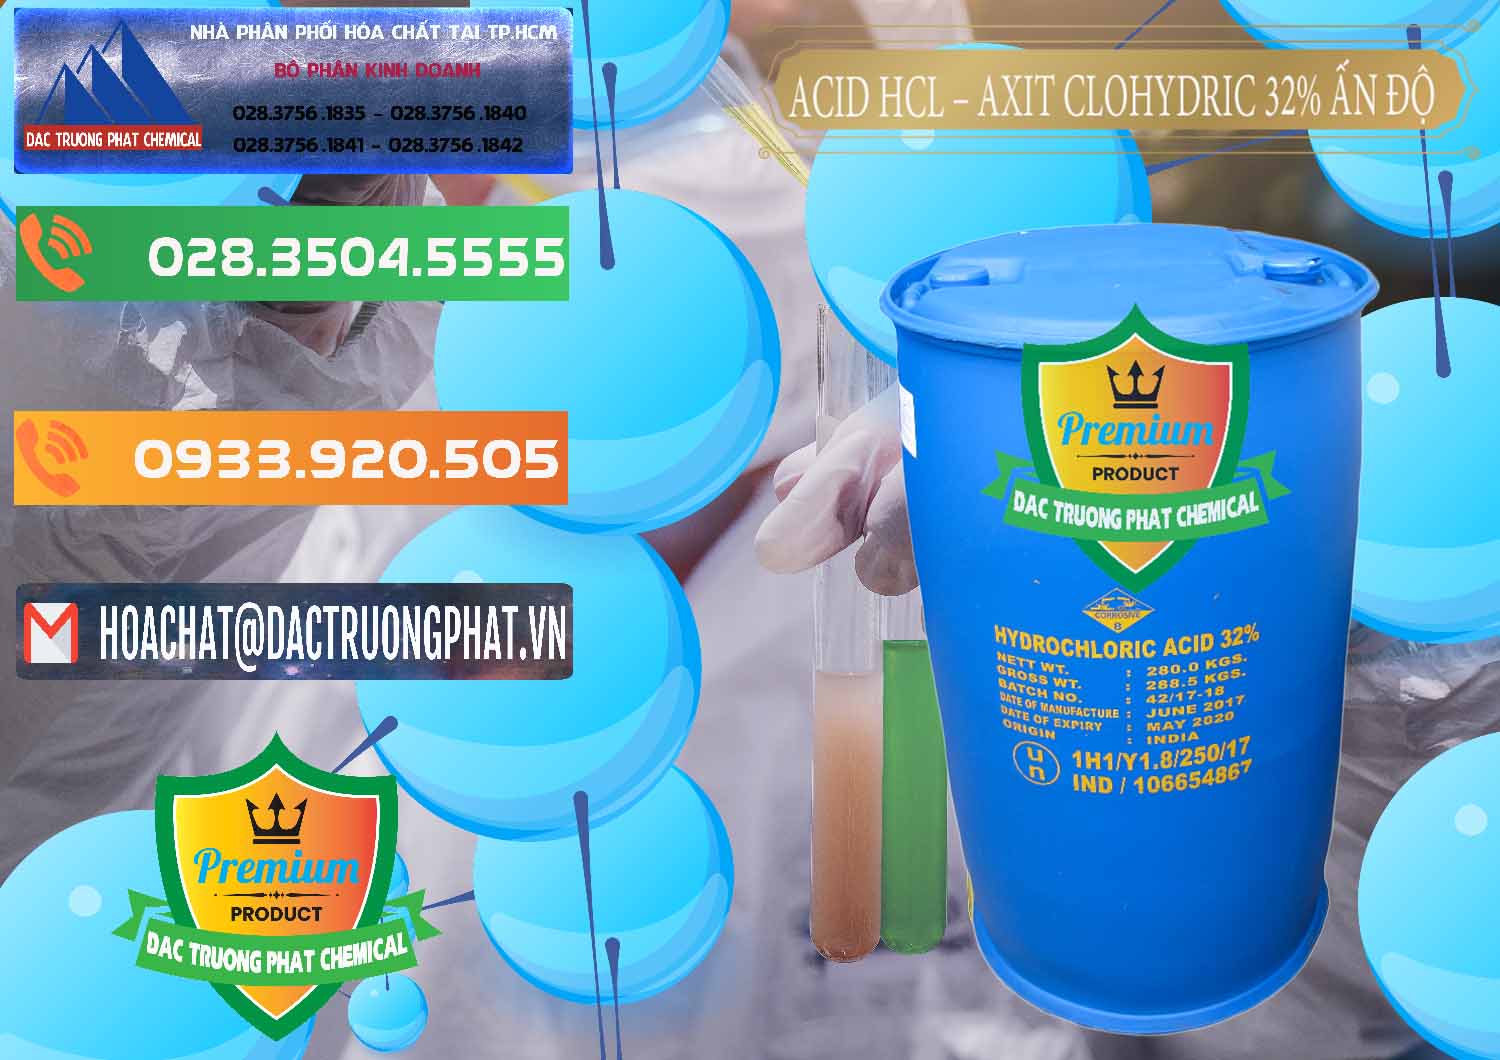 Nơi chuyên bán - cung cấp Acid HCL - Axit Cohidric 32% - 35% Ấn Độ India - 0010 - Phân phối ( nhập khẩu ) hóa chất tại TP.HCM - hoachatxulynuoc.com.vn